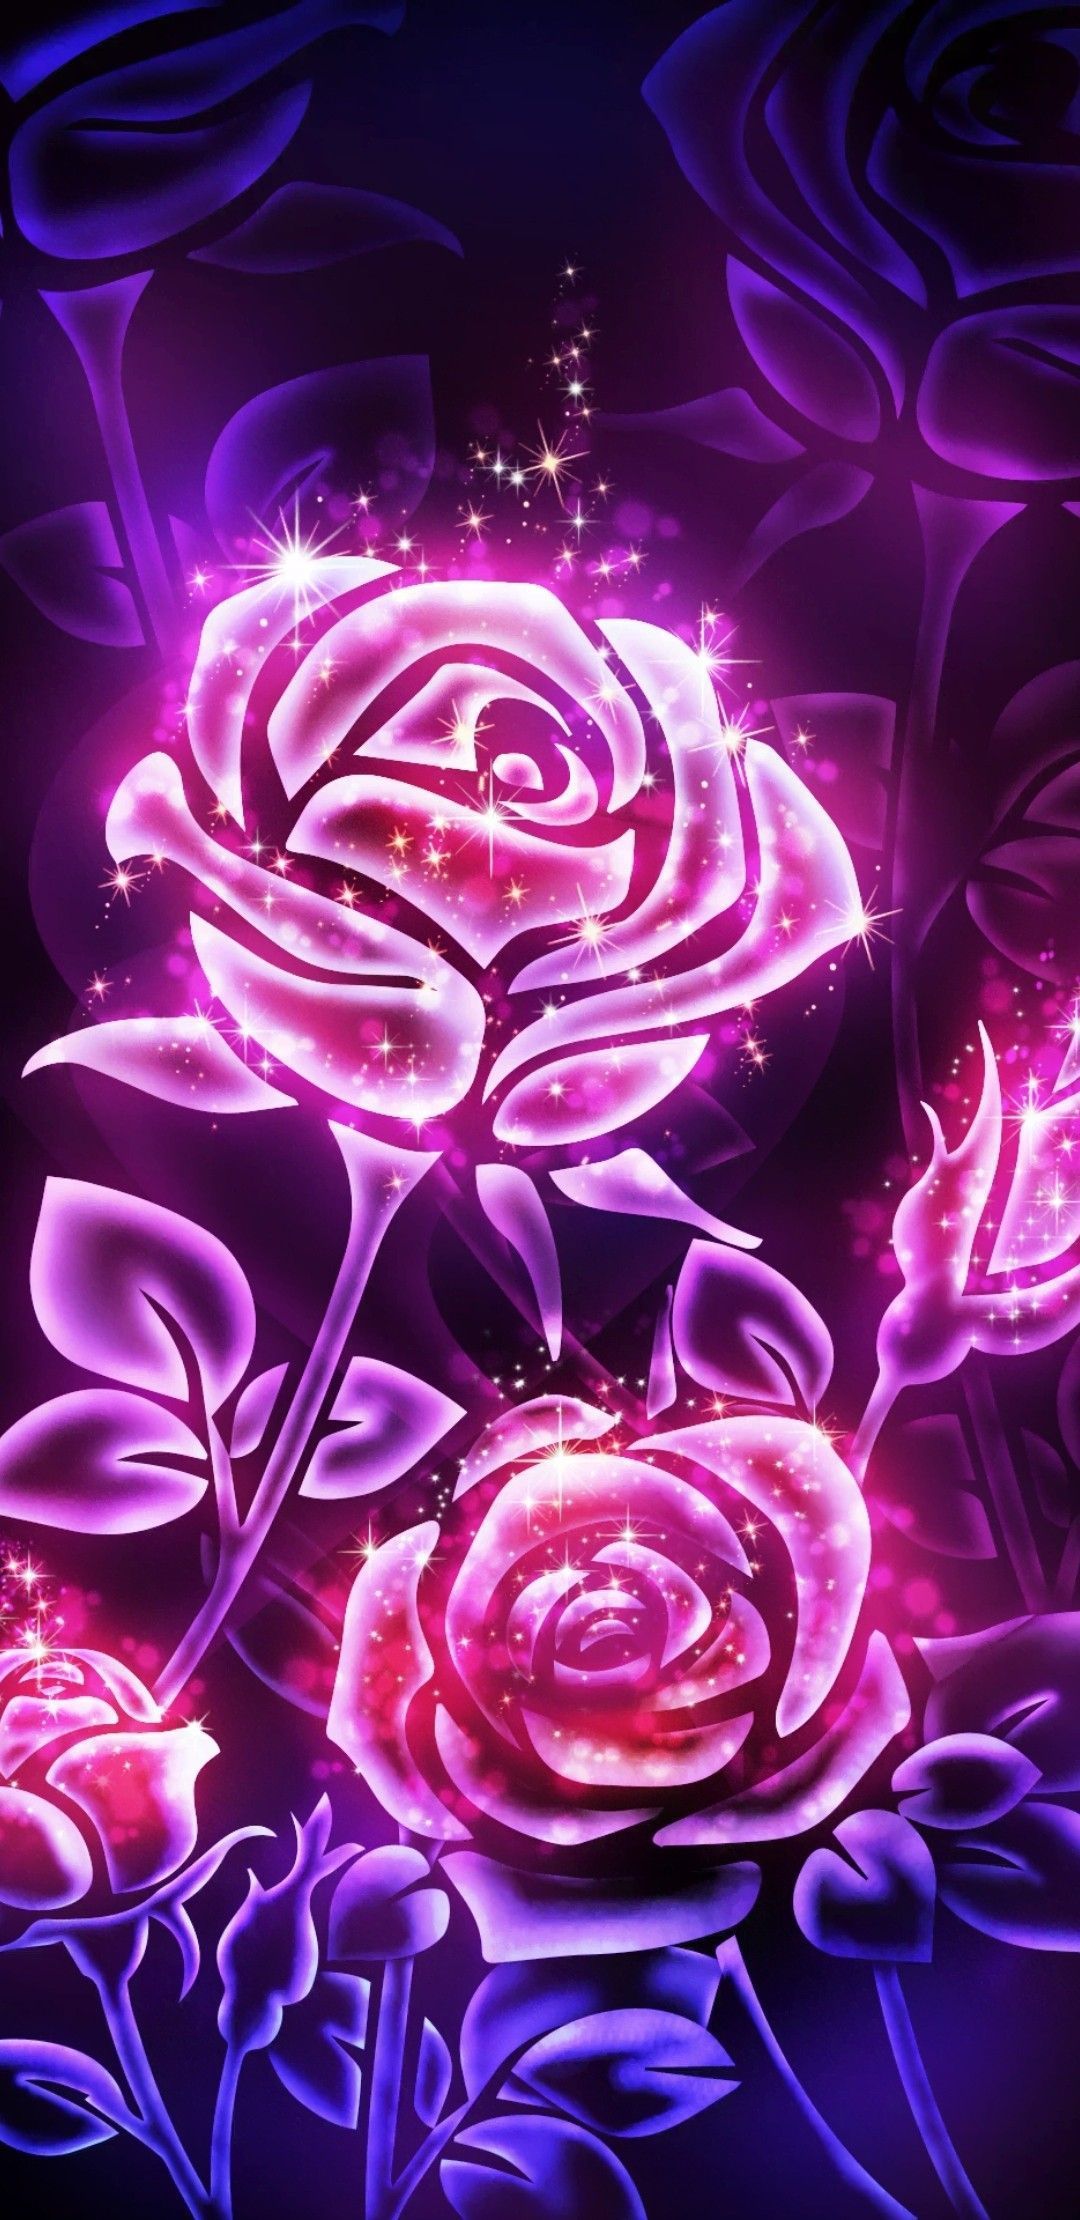 Wallpaper galaxy roses đẹp và tuyệt đẹp nhất